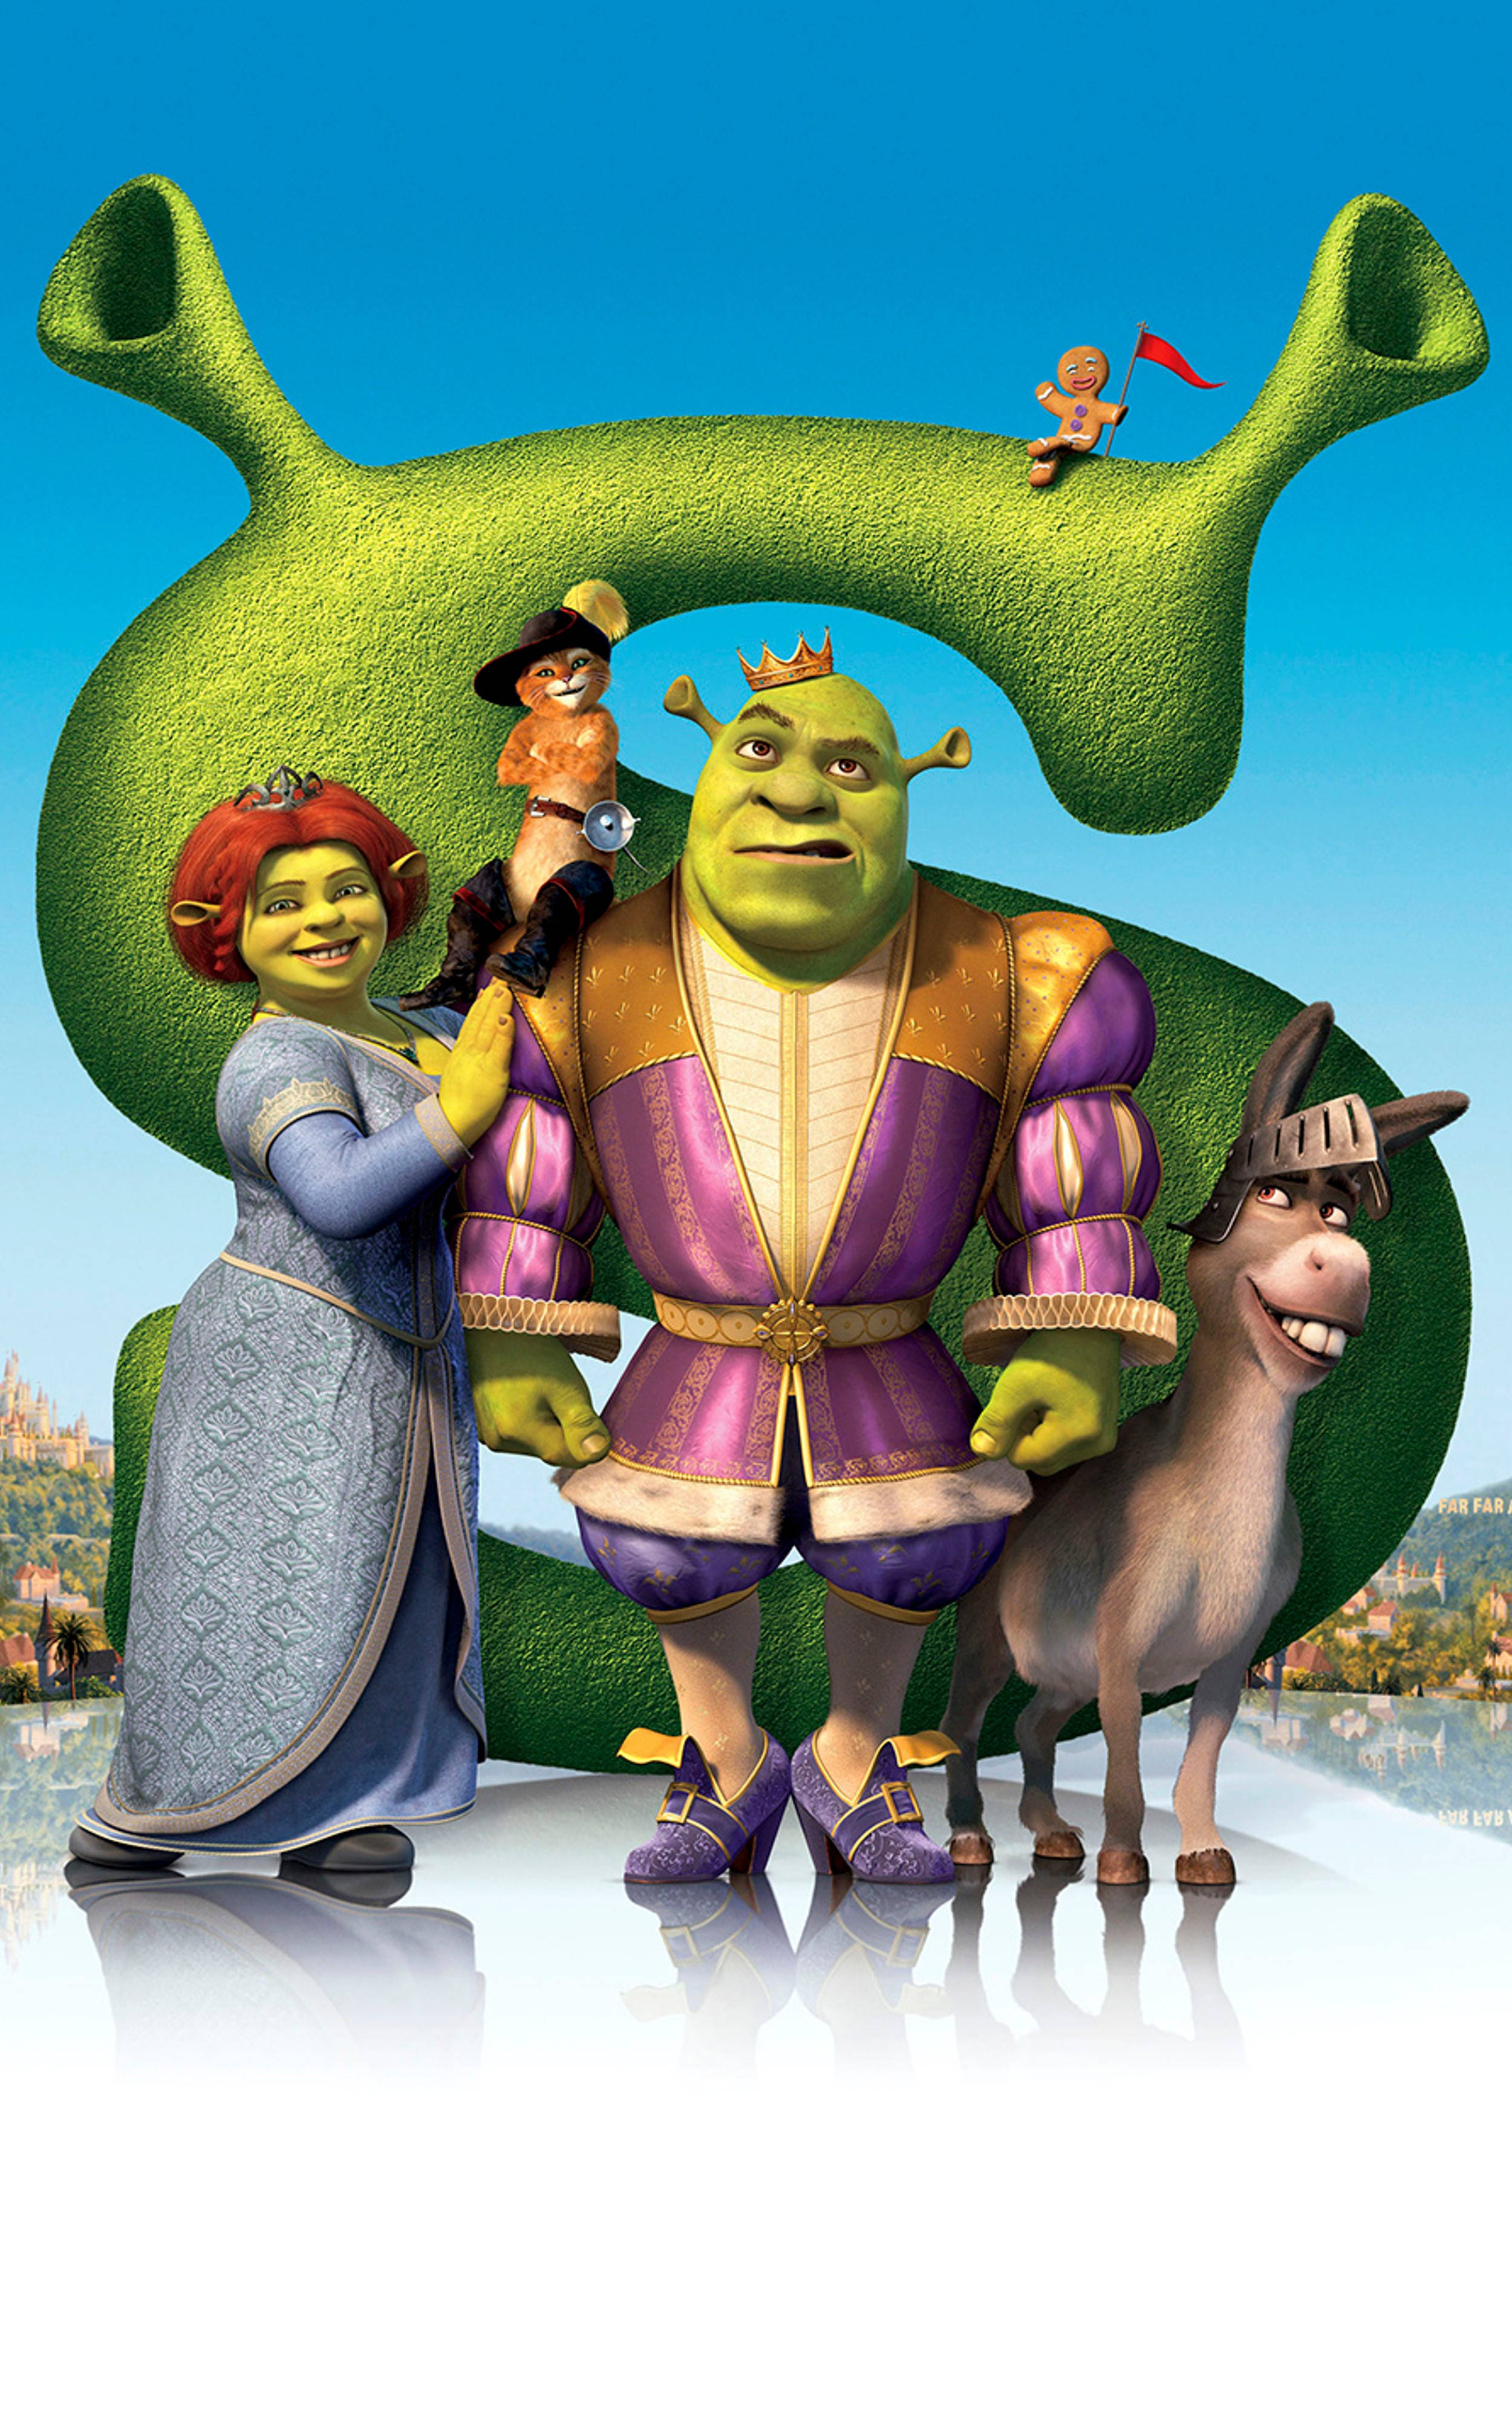 A poster of shrek and his family - Shrek